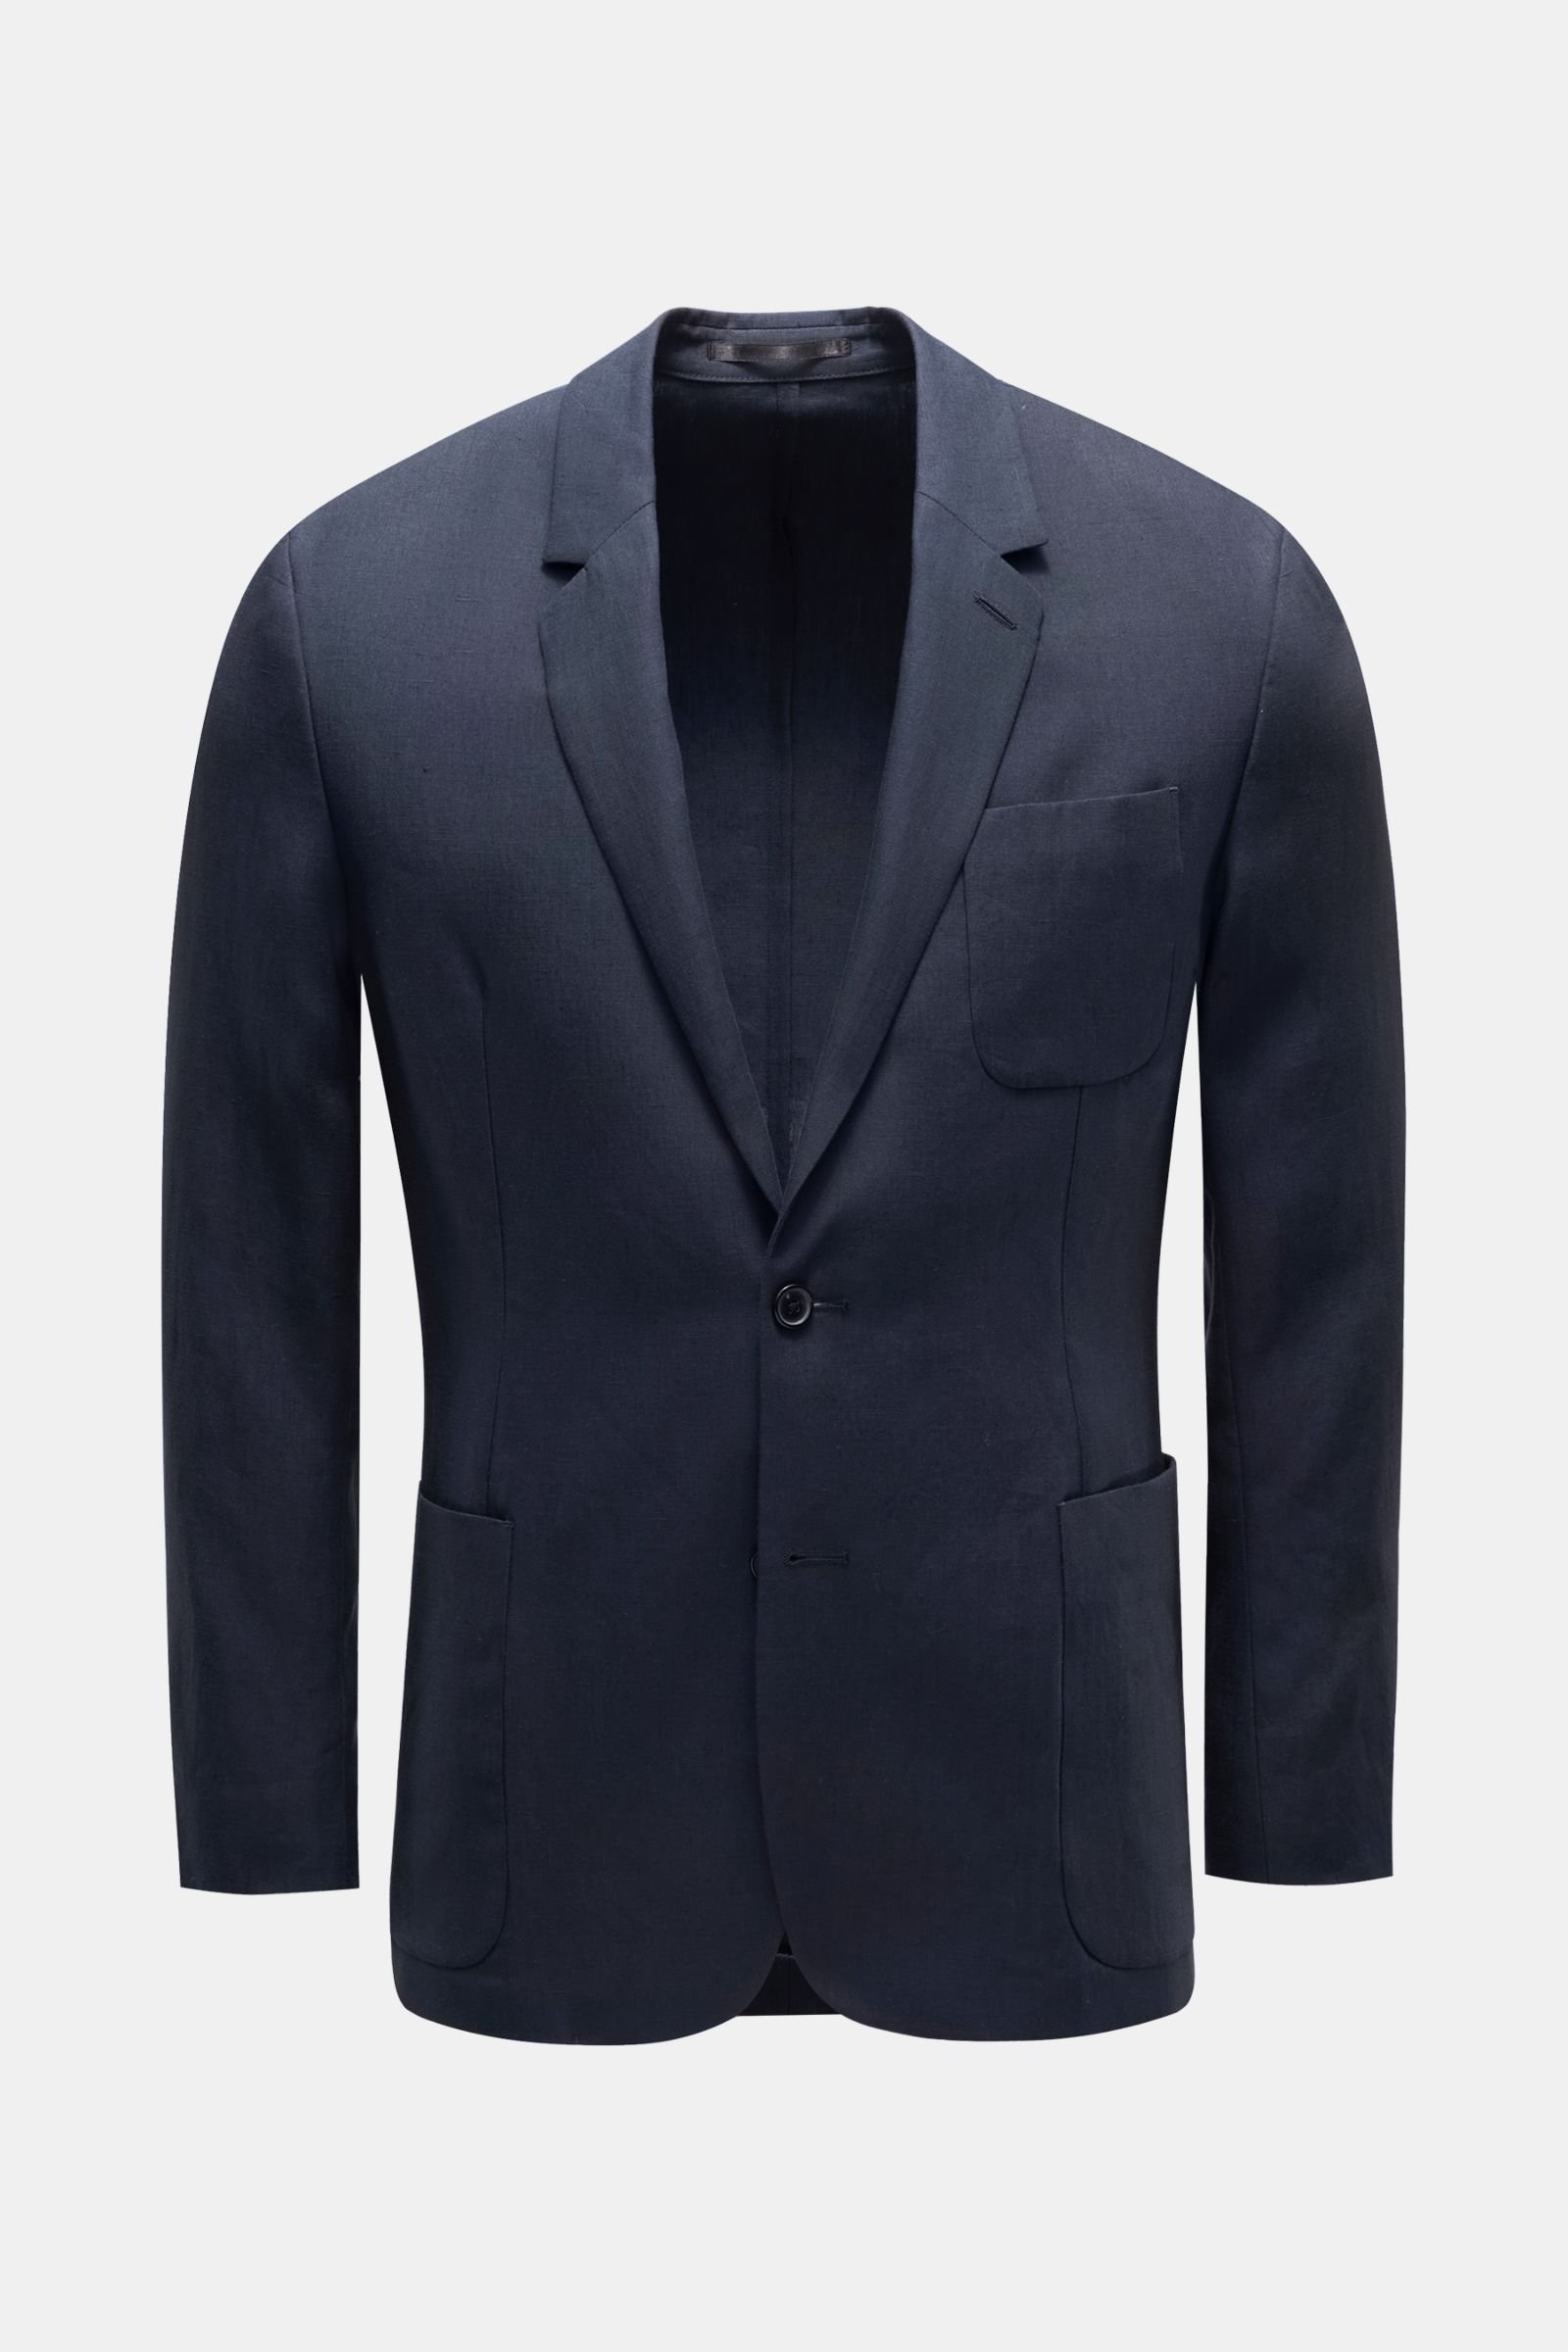 Smart-casual linen jacket navy